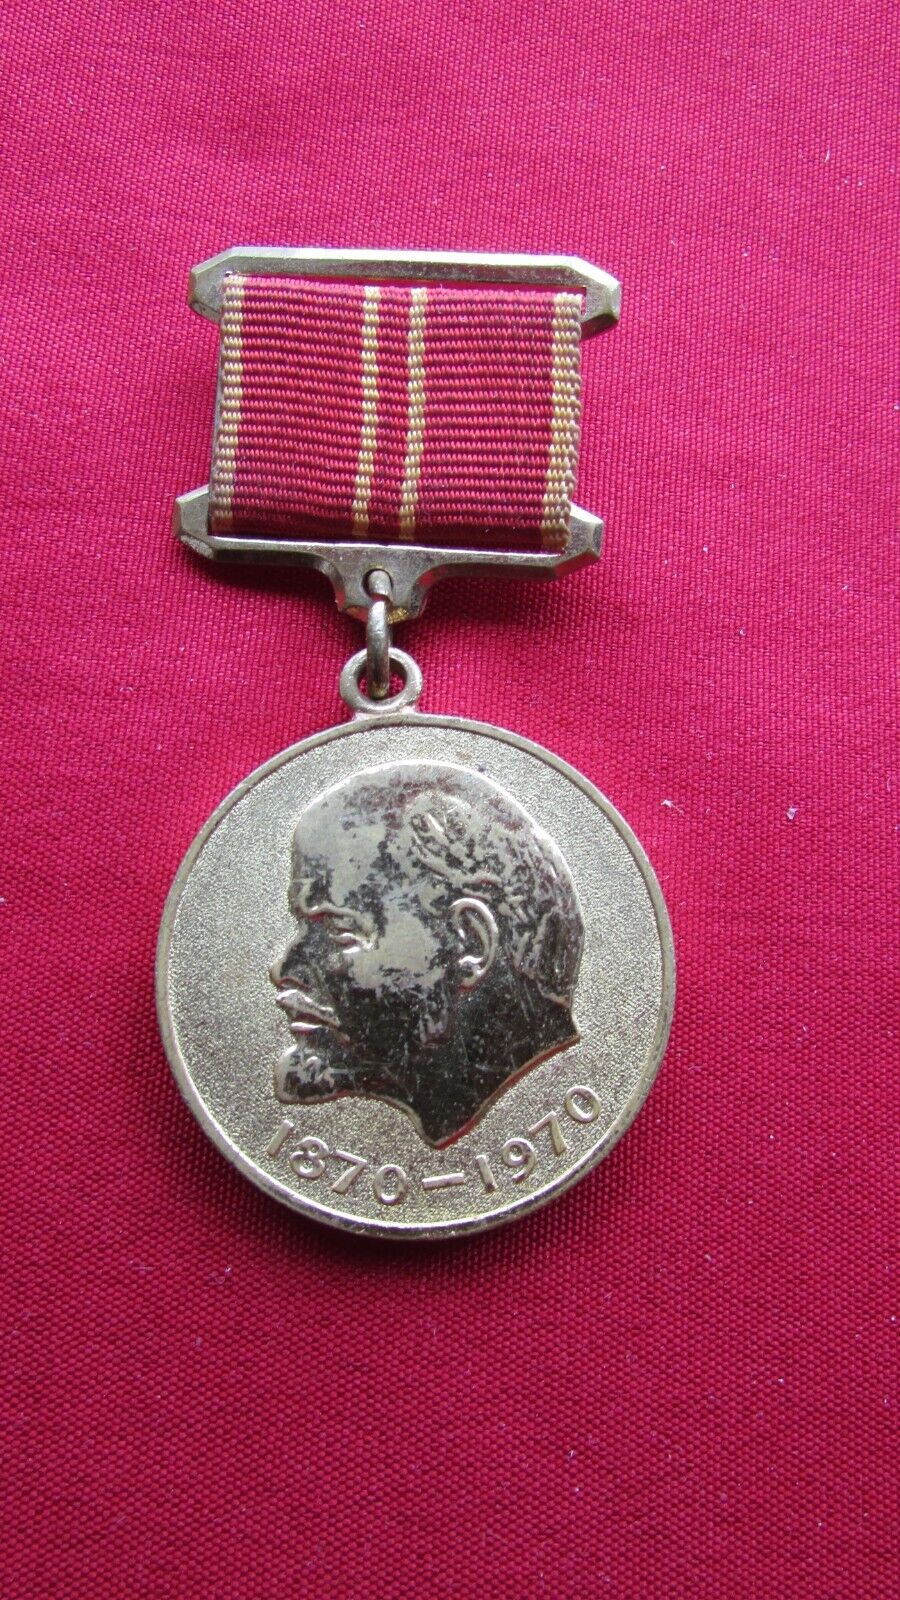 RARE Obsolete  USSR Soviet  Medal 100 years of Lenin -   For Valiant Labor